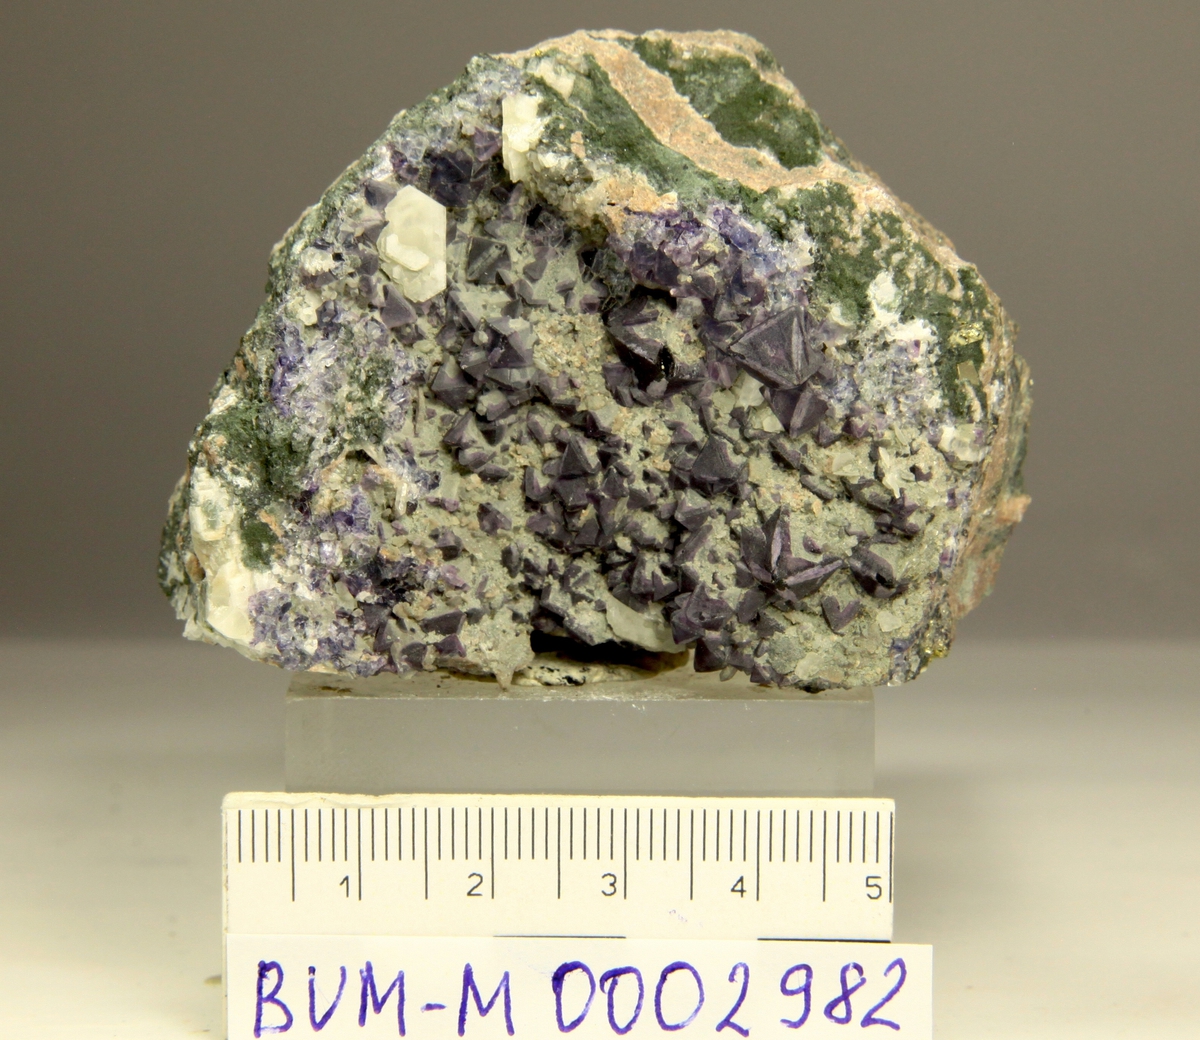 Flusspat krystaller, blålige oktaedre med ekstra flater. Små kvarts og kalsittkrystaller.
Huken stenbrudd, Grorud.